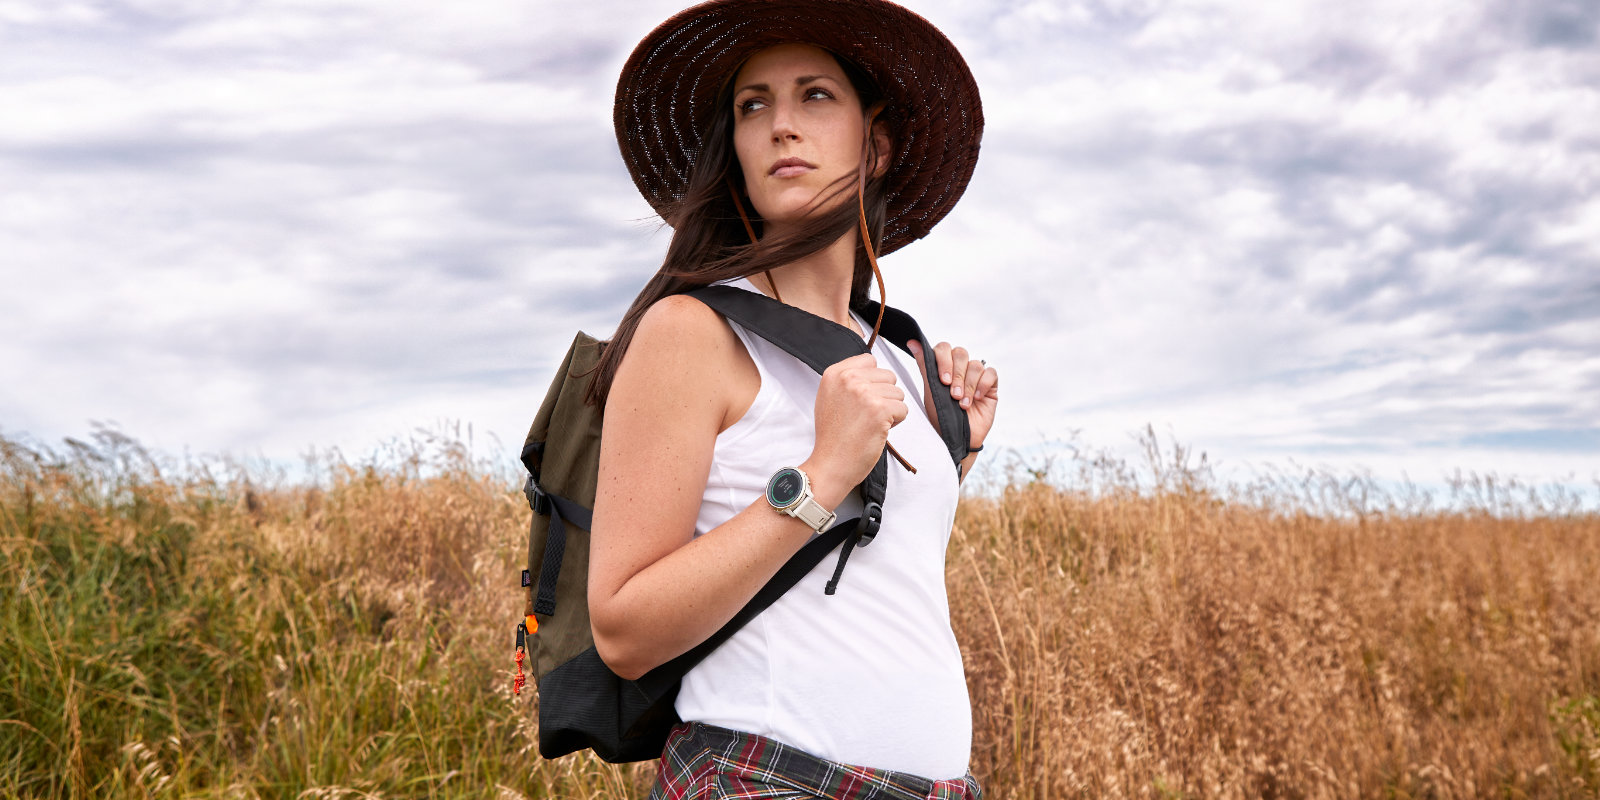 Frau mit Hut und Garmin Uhr am Handgelenk wandert Wochen nach der Geburt durch ein Feld